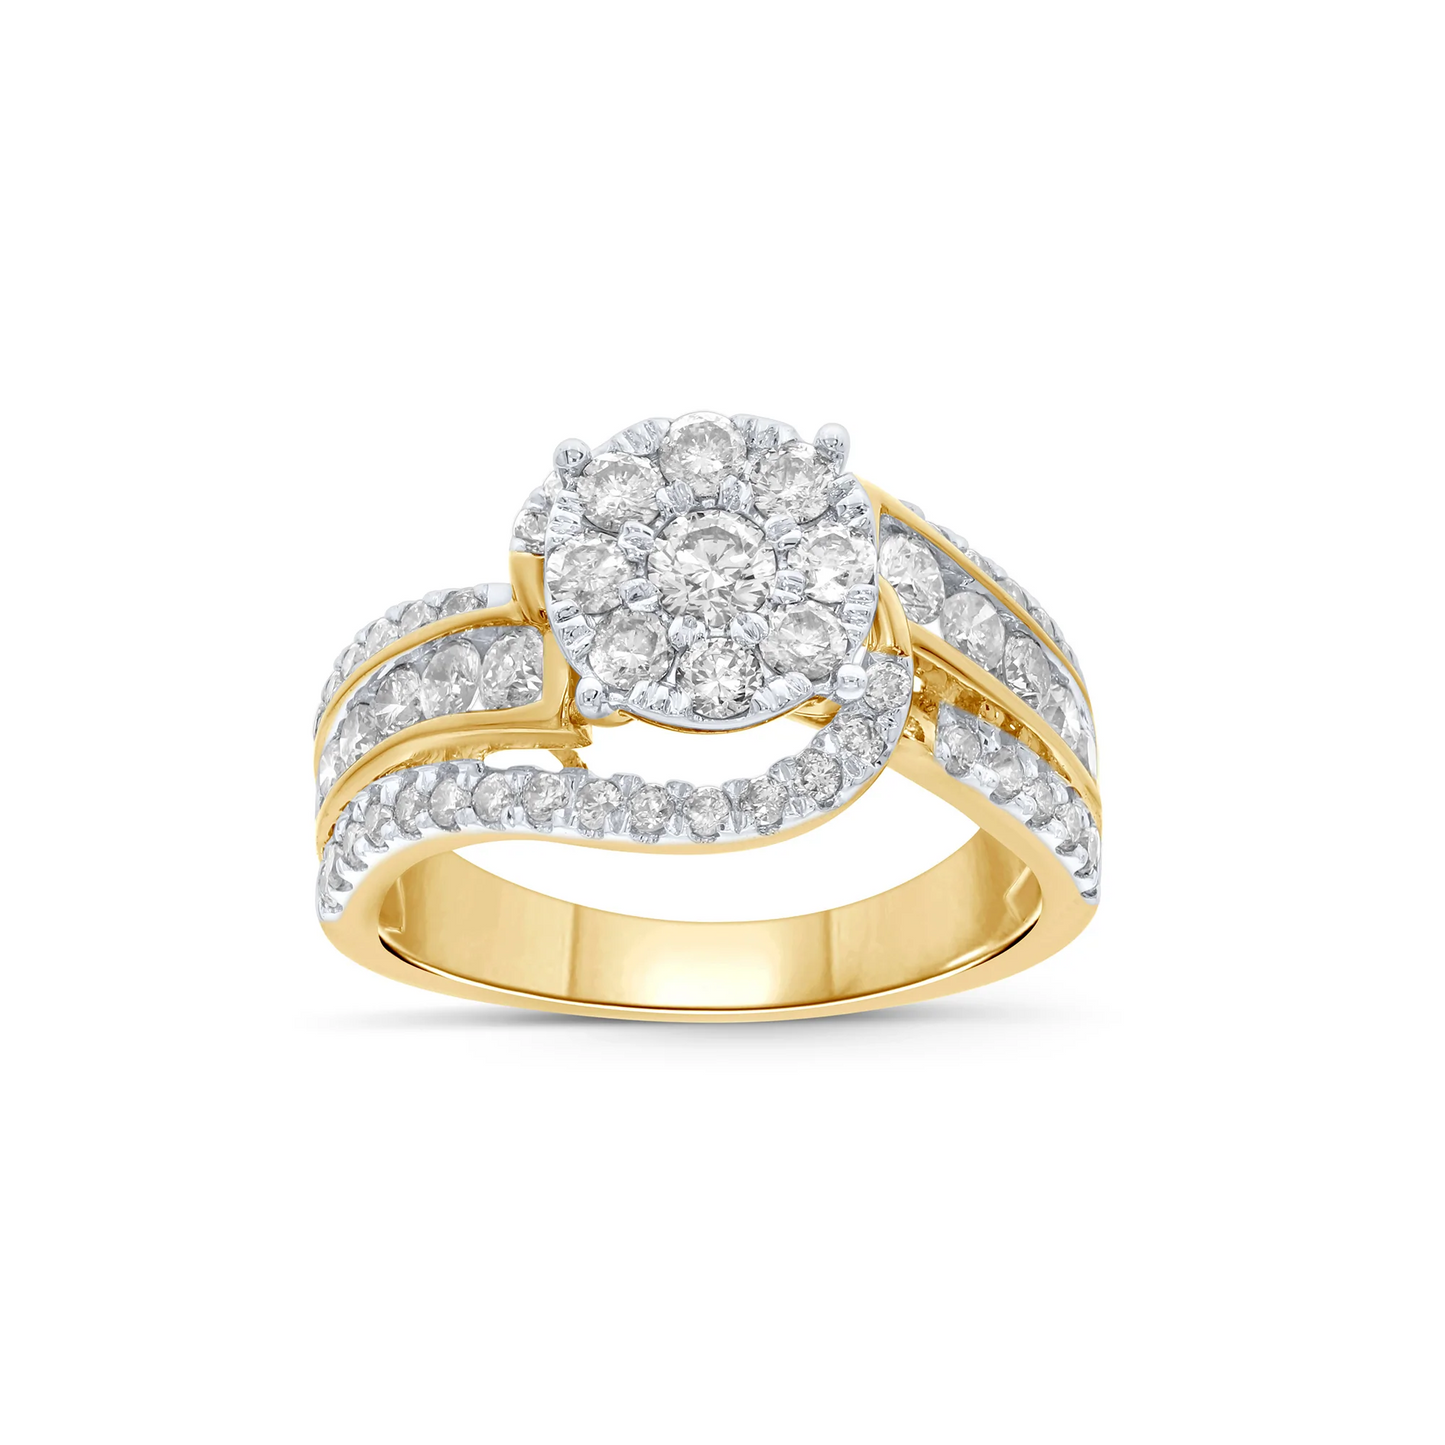 10K YELLOW GOLD 1.75 CARAT WOMEN REAL DIAMOND ENGAGEMENT RING WEDDING RING BRIDAL / SKU RG07133-YG